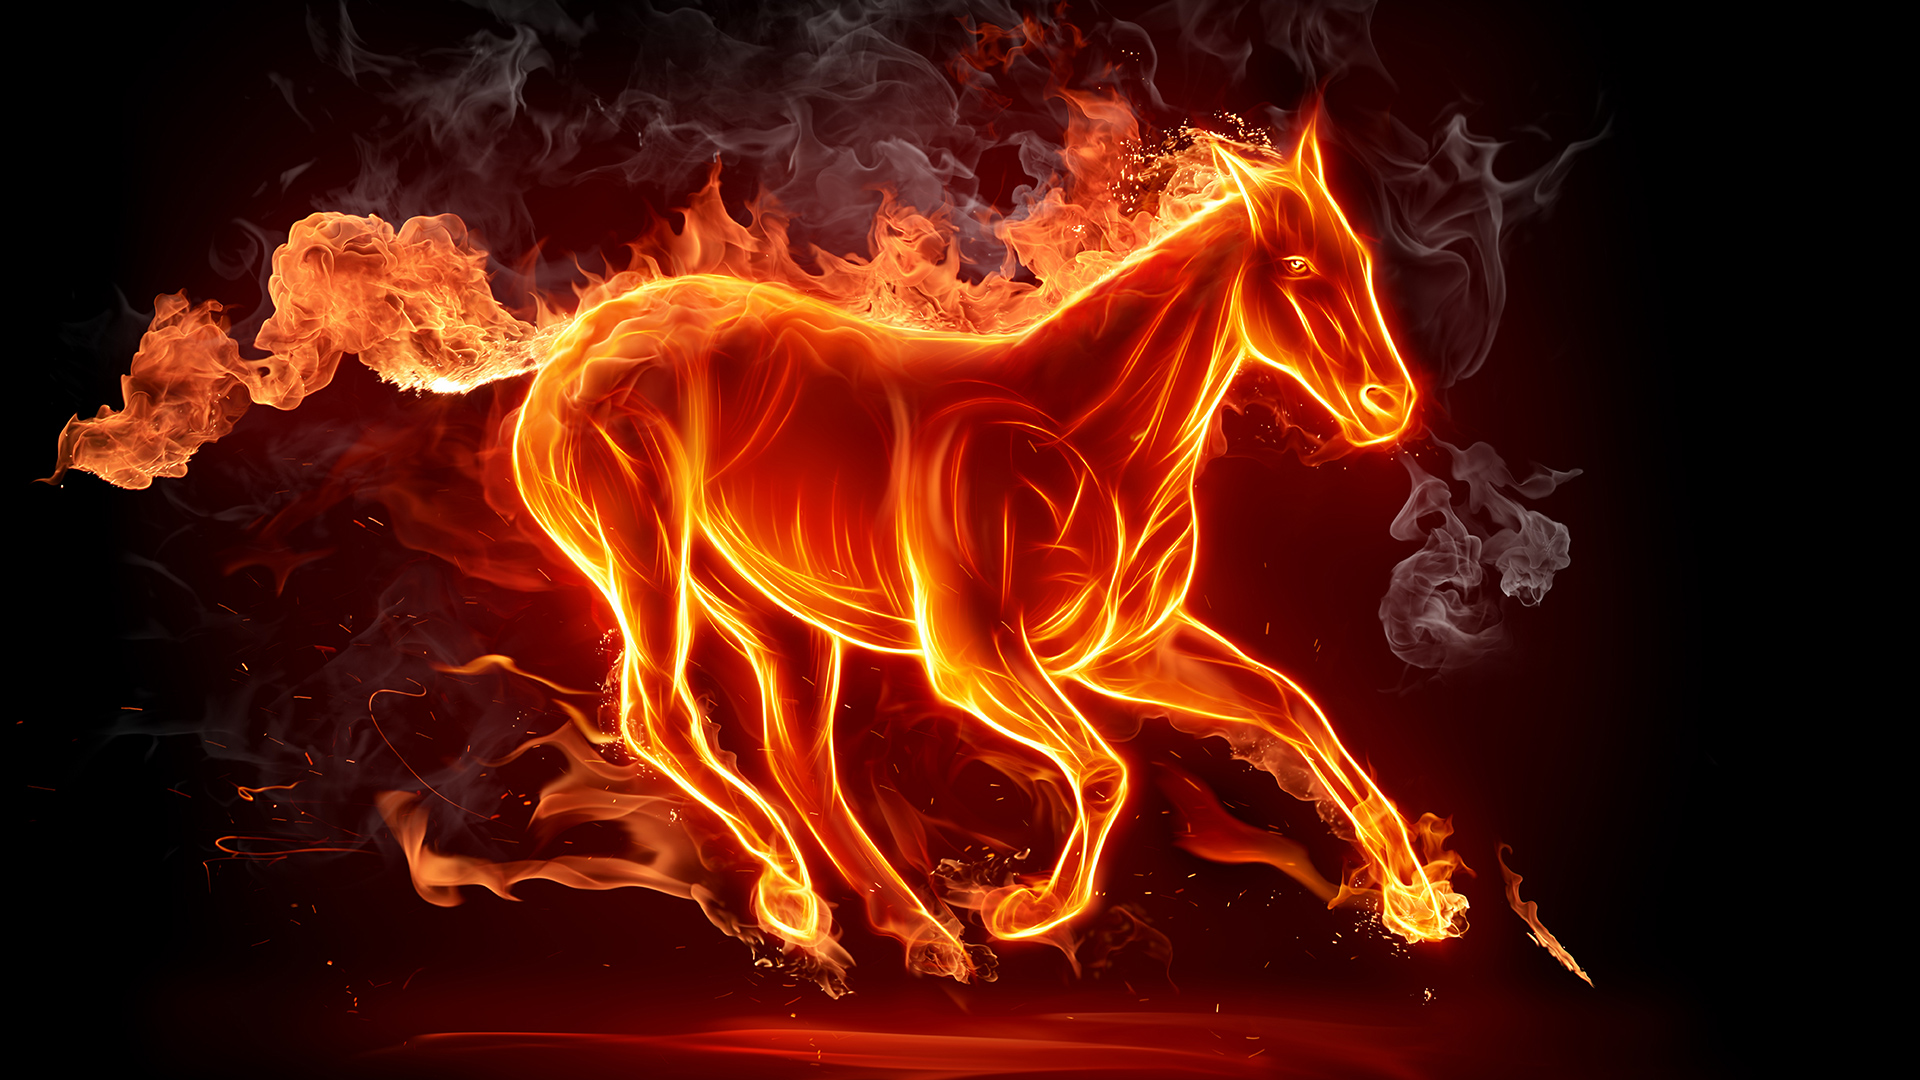 Wallpapers fire horse fiery on the desktop